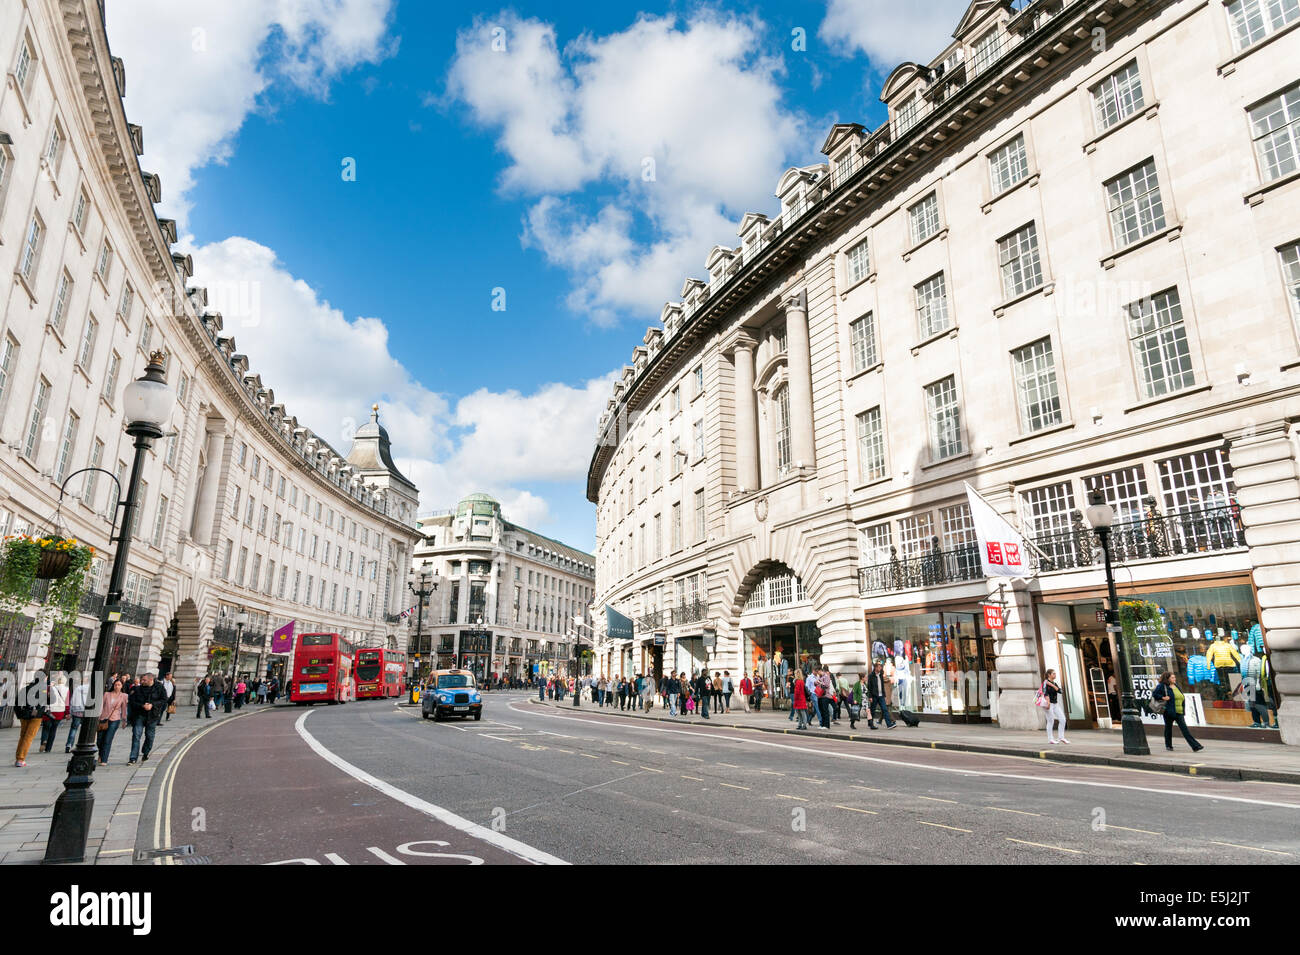 Regent Street, London, England, UK Banque D'Images